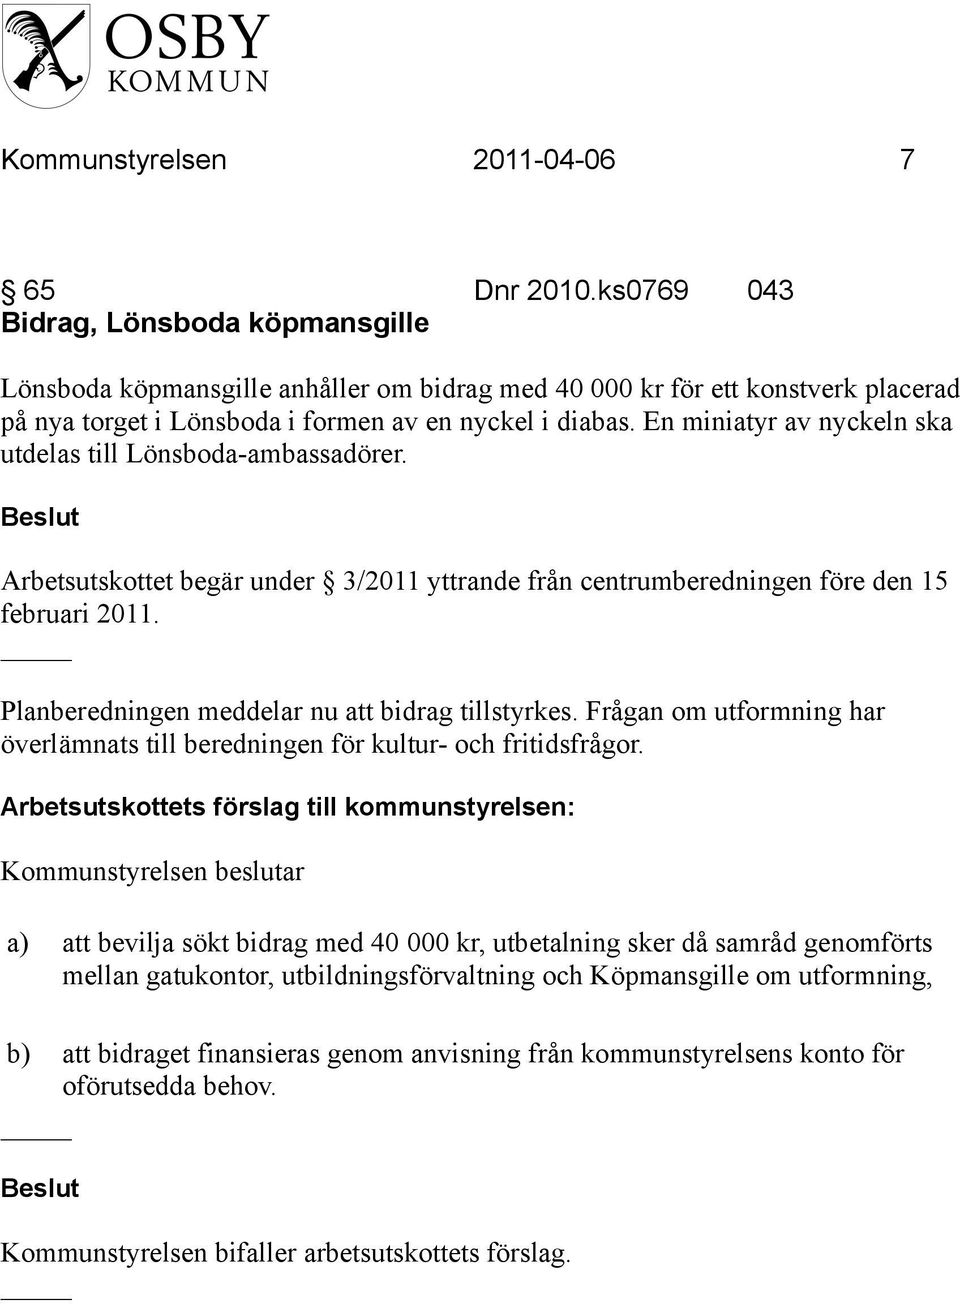 En miniatyr av nyckeln ska utdelas till Lönsboda-ambassadörer. Arbetsutskottet begär under 3/2011 yttrande från centrumberedningen före den 15 februari 2011.